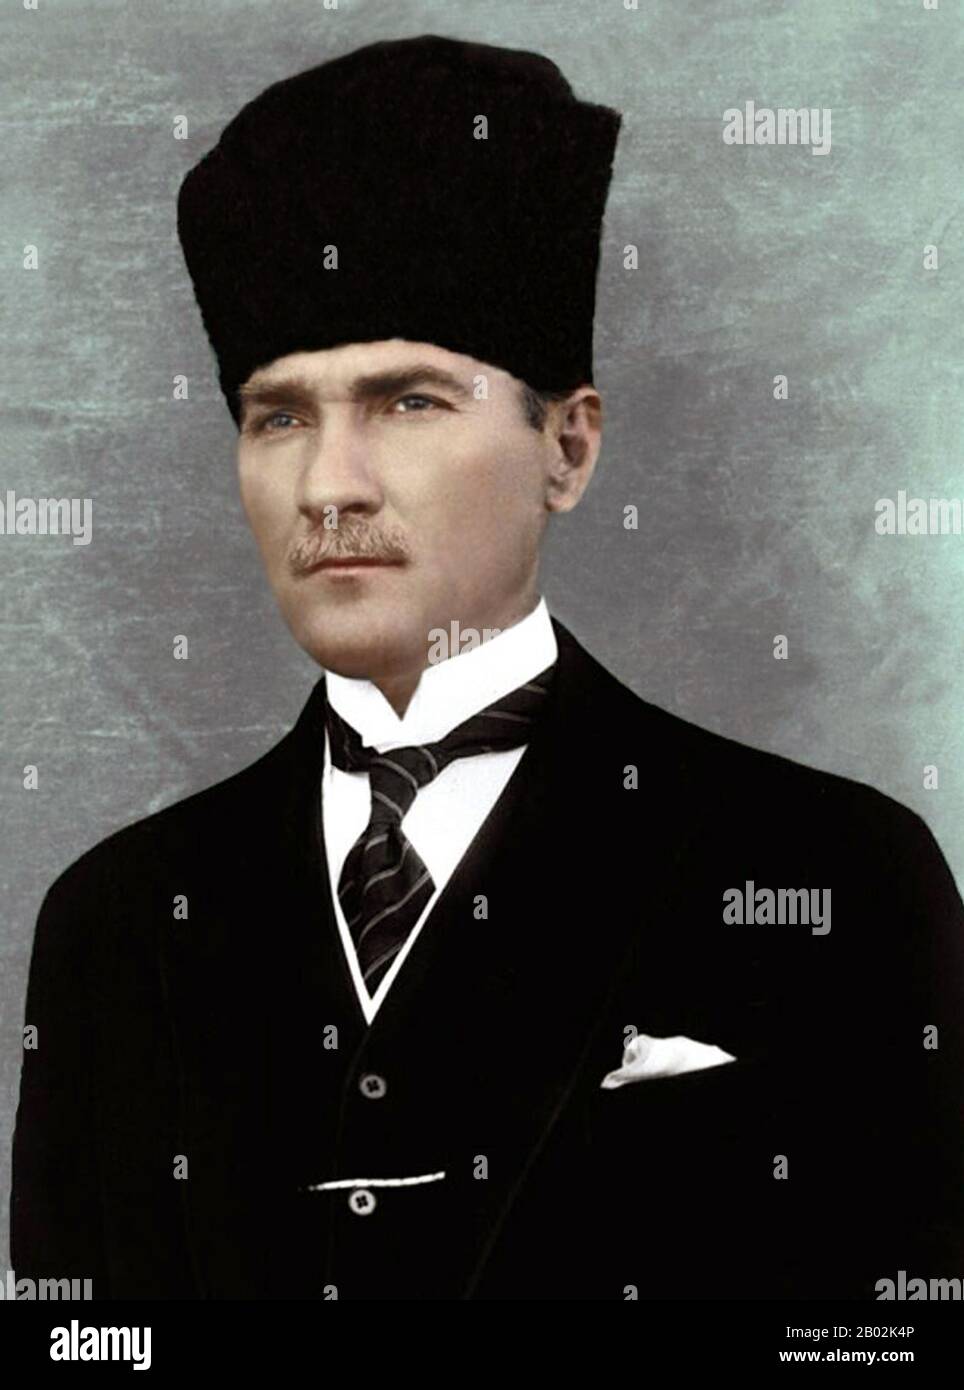 Mustafa Kemal Atatürk (zwischen 1881 und 10. November 1938) war ein osmanischer und türkischer Armeeoffizier, revolutionärer Staatsmann, Schriftsteller und der erste Präsident der Türkei. Ihm wird zugeschrieben, der Gründer des modernen türkischen Staates zu sein. Atatürk war während des ersten Weltkriegs Militäroffizier. Nach der Niederlage des Osmanenreiches im ersten Weltkrieg leitete er die türkische Nationalbewegung im türkischen Unabhängigkeitskrieg. Nachdem er in Ankara eine provisorische Regierung gegründet hatte, besiegte er die von den Alliierten entsandten Streitkräfte. Seine Militärkampagnen gewannen die Unabhängigkeit der Türkei. Atatürk schlug daraufhin ein Programm von Poli ein Stockfoto